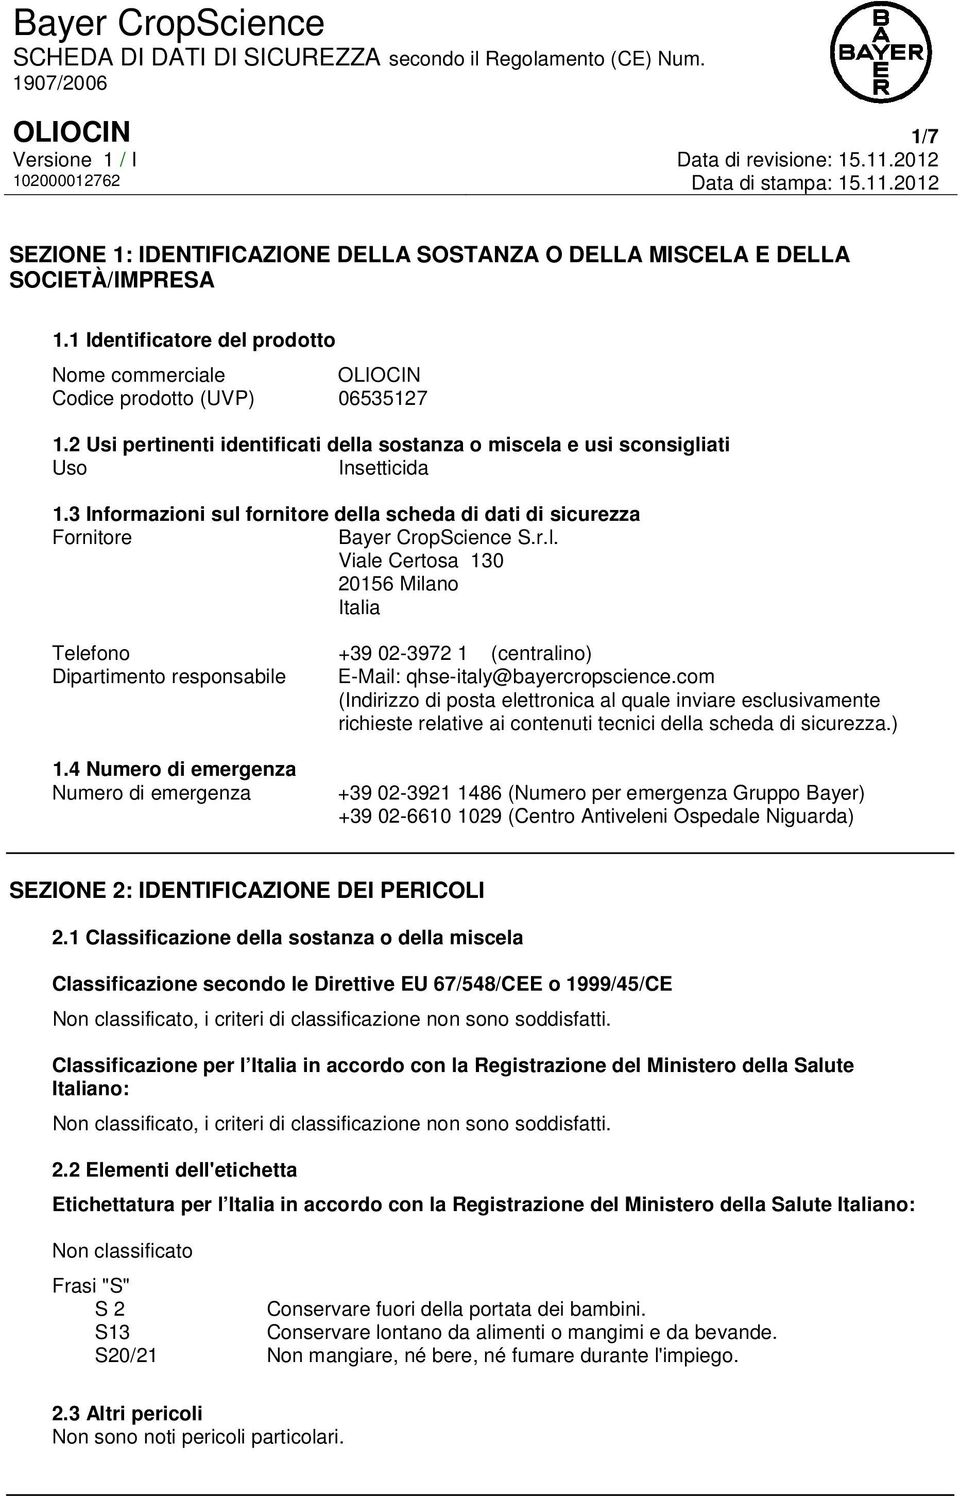 3 Informazioni sul fornitore della scheda di dati di sicurezza Fornitore Bayer CropScience S.r.l. Viale Certosa 130 20156 Milano Italia Telefono +39 02-3972 1 (centralino) Dipartimento responsabile E-Mail: qhse-italy@bayercropscience.